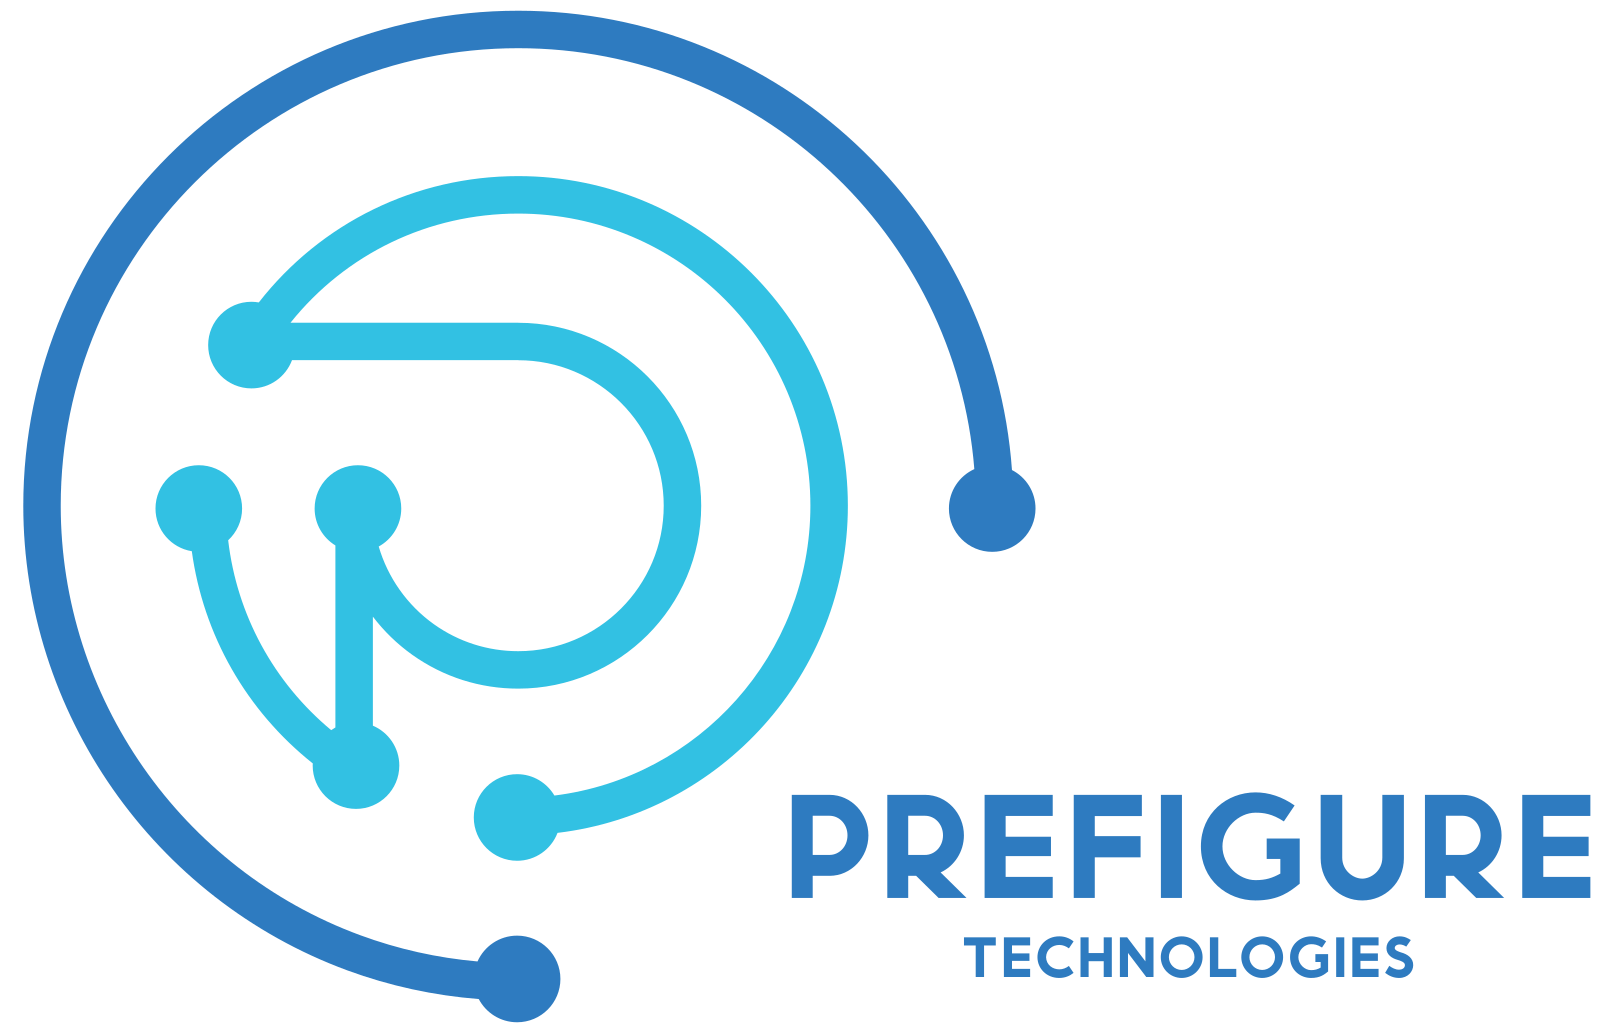 Prefigure Technologies